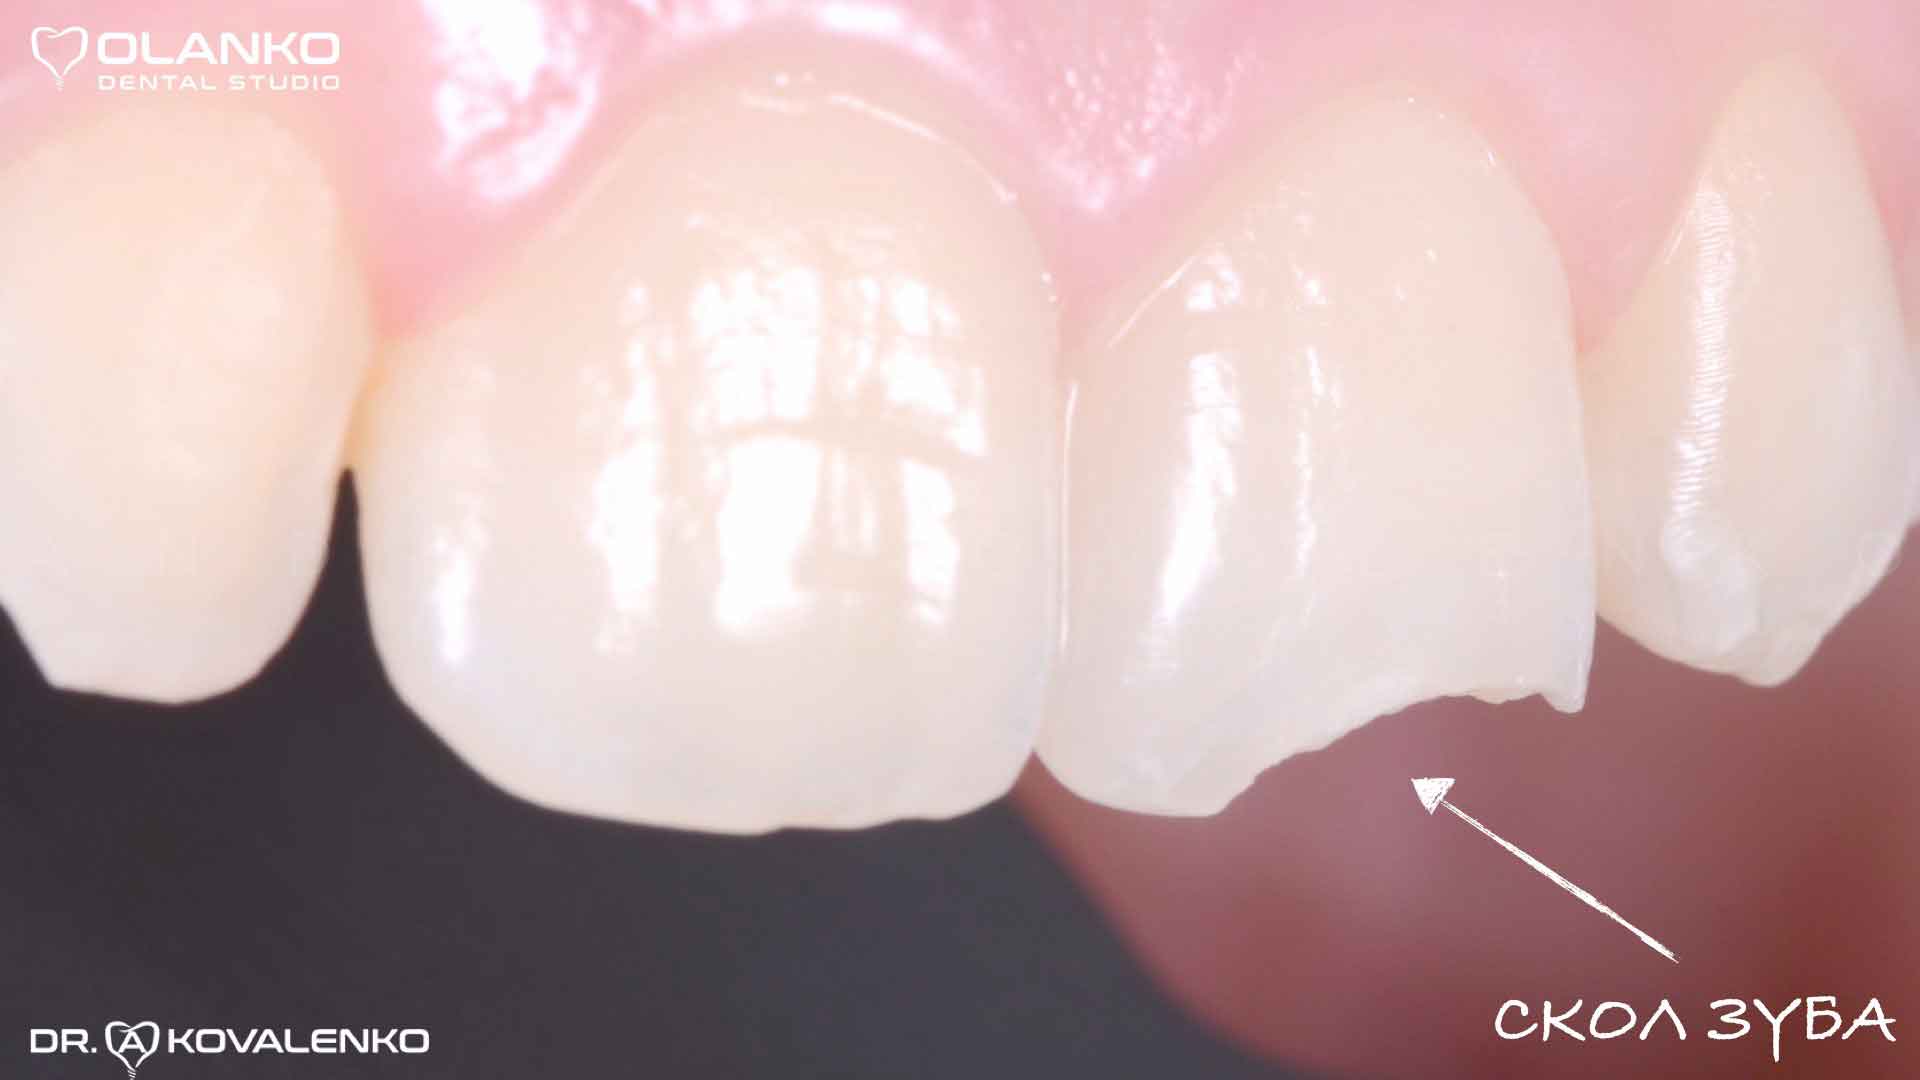 Техника реставрации зубов фотополимером Оланко